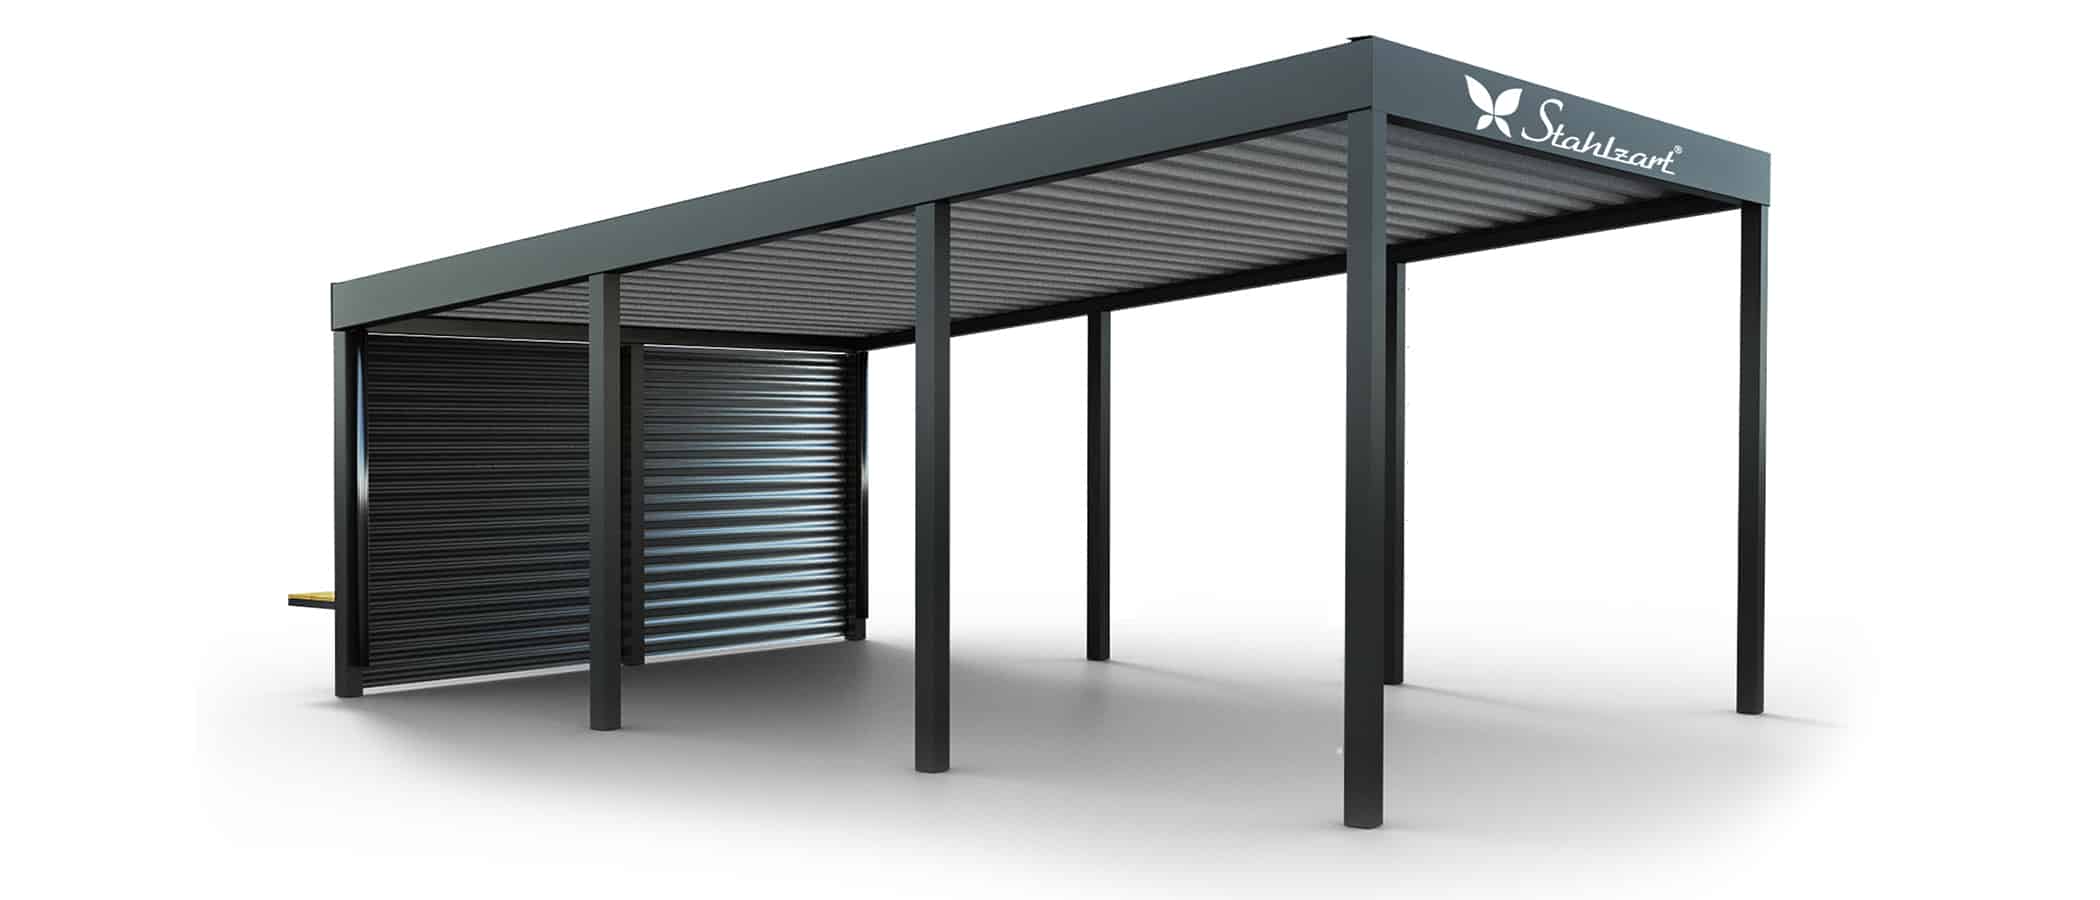 solar-carport-mit-pultdach-carports-solarcarport-pultdach-carportdach-design-strom-angebot-photovoltaikanlage-module-solardach-dachflaeche-metall-stahl-einzelcarport-mit-blech-seitenwand-stahlzart